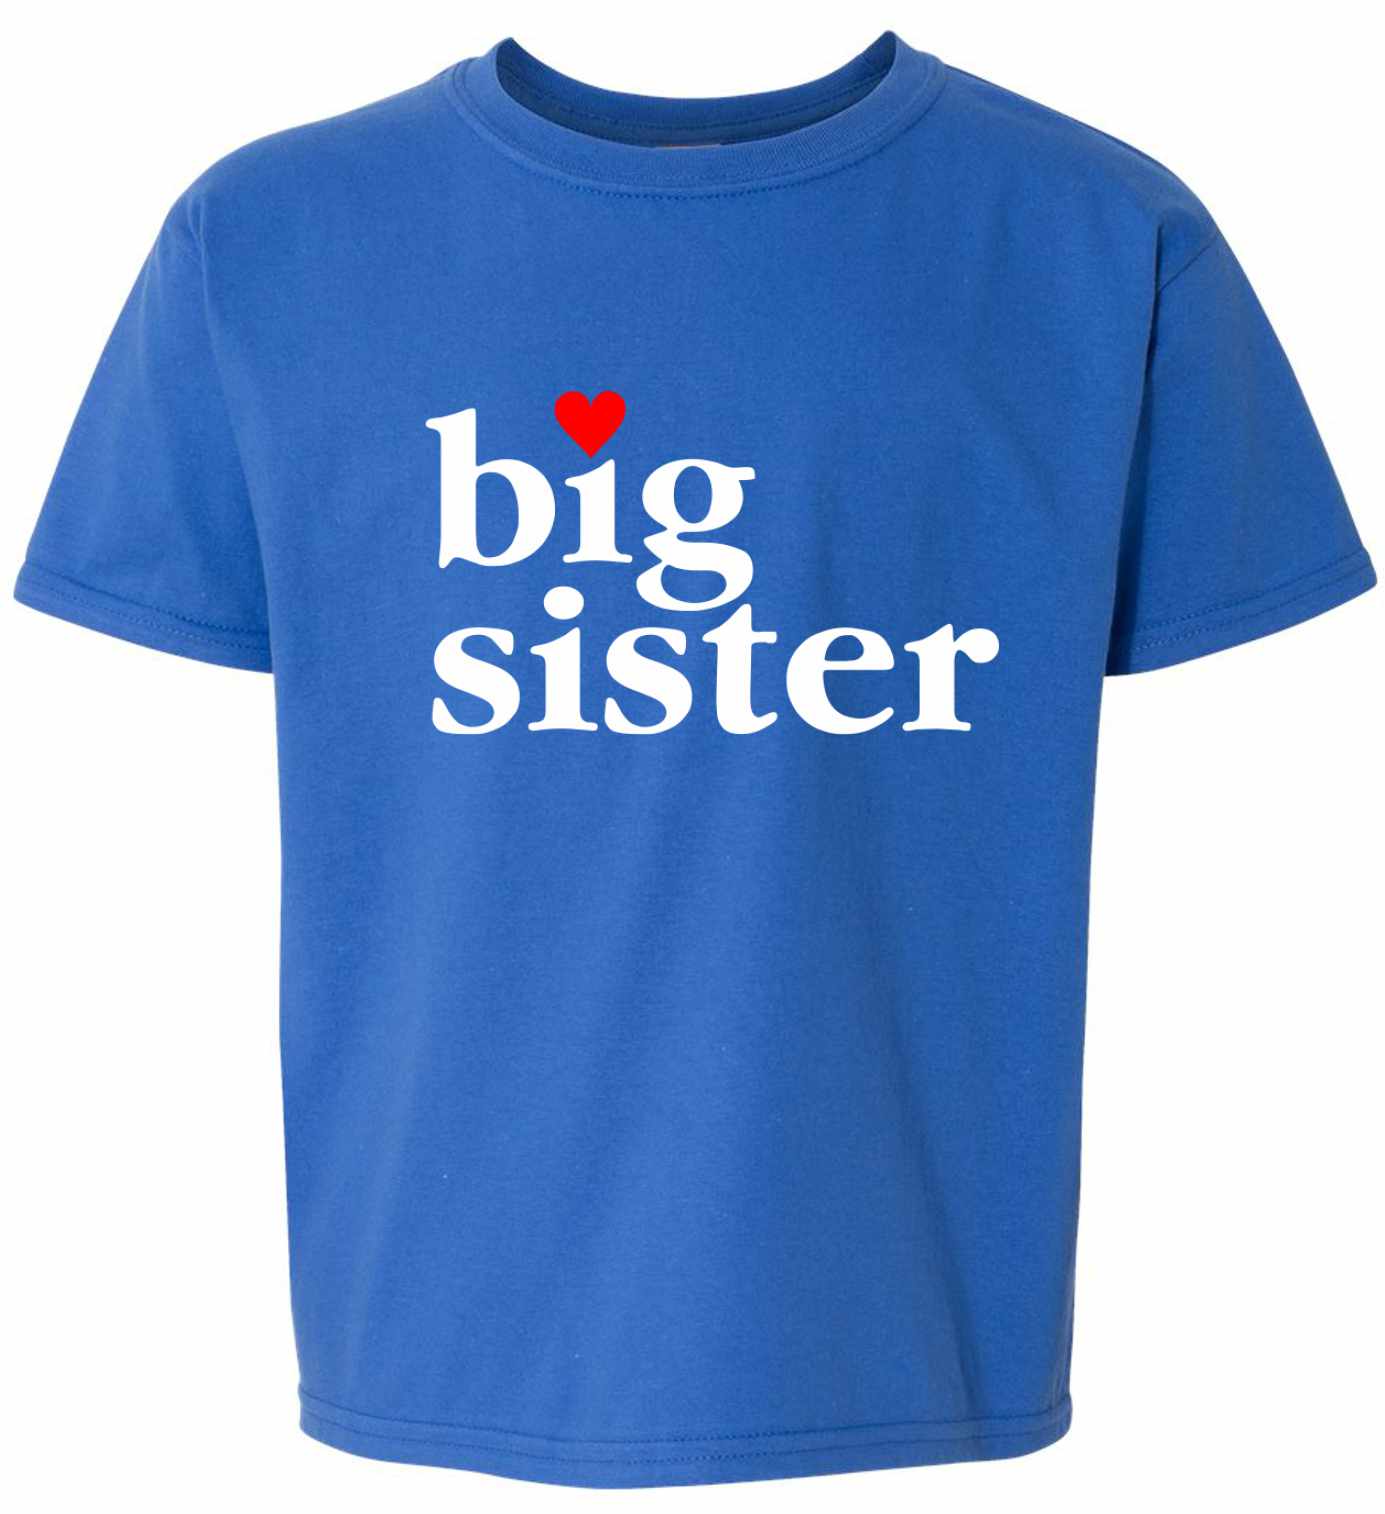 Big Sister on Kids T-Shirt (#986-201)